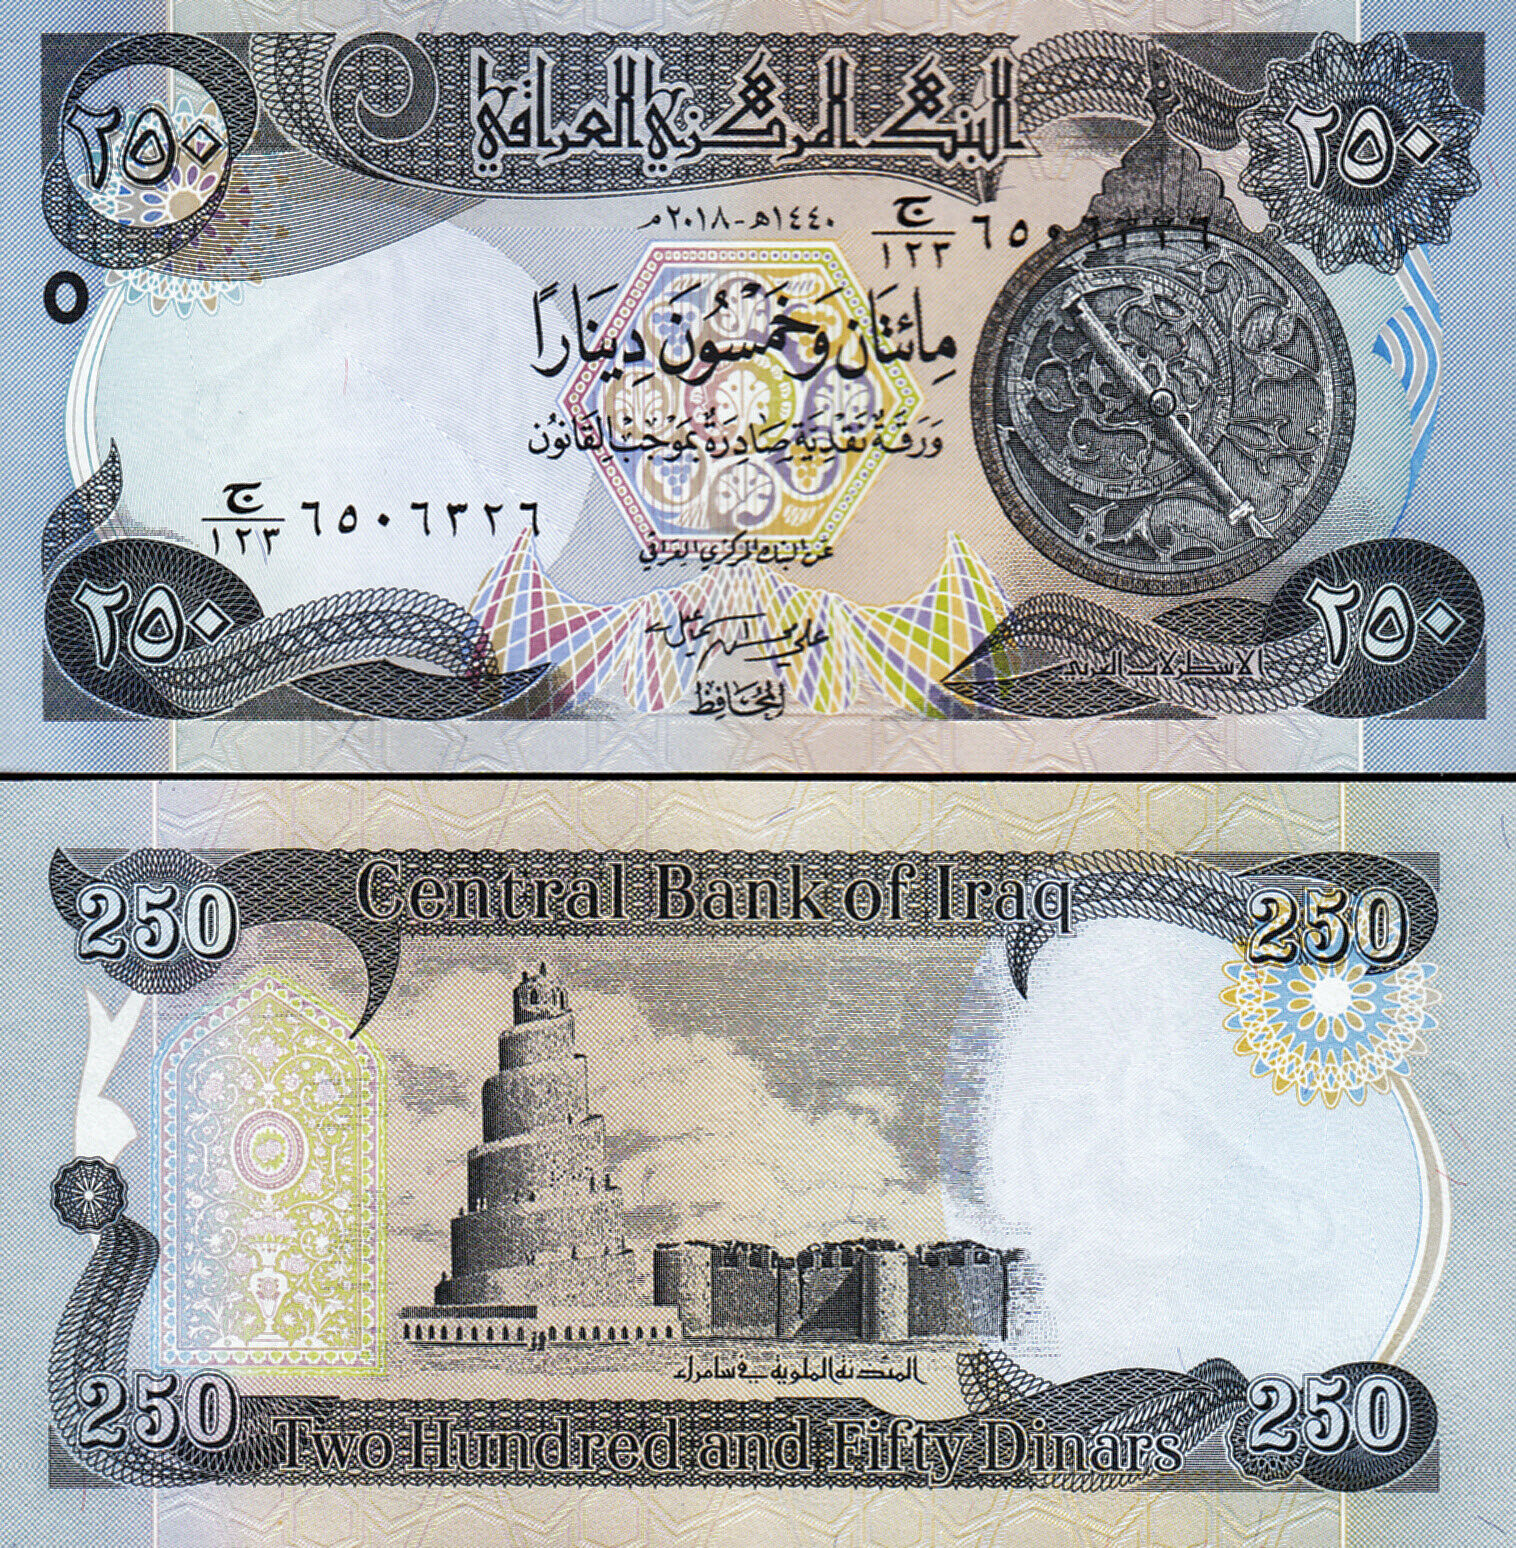 Irak 2018 - 250 dinars UNC